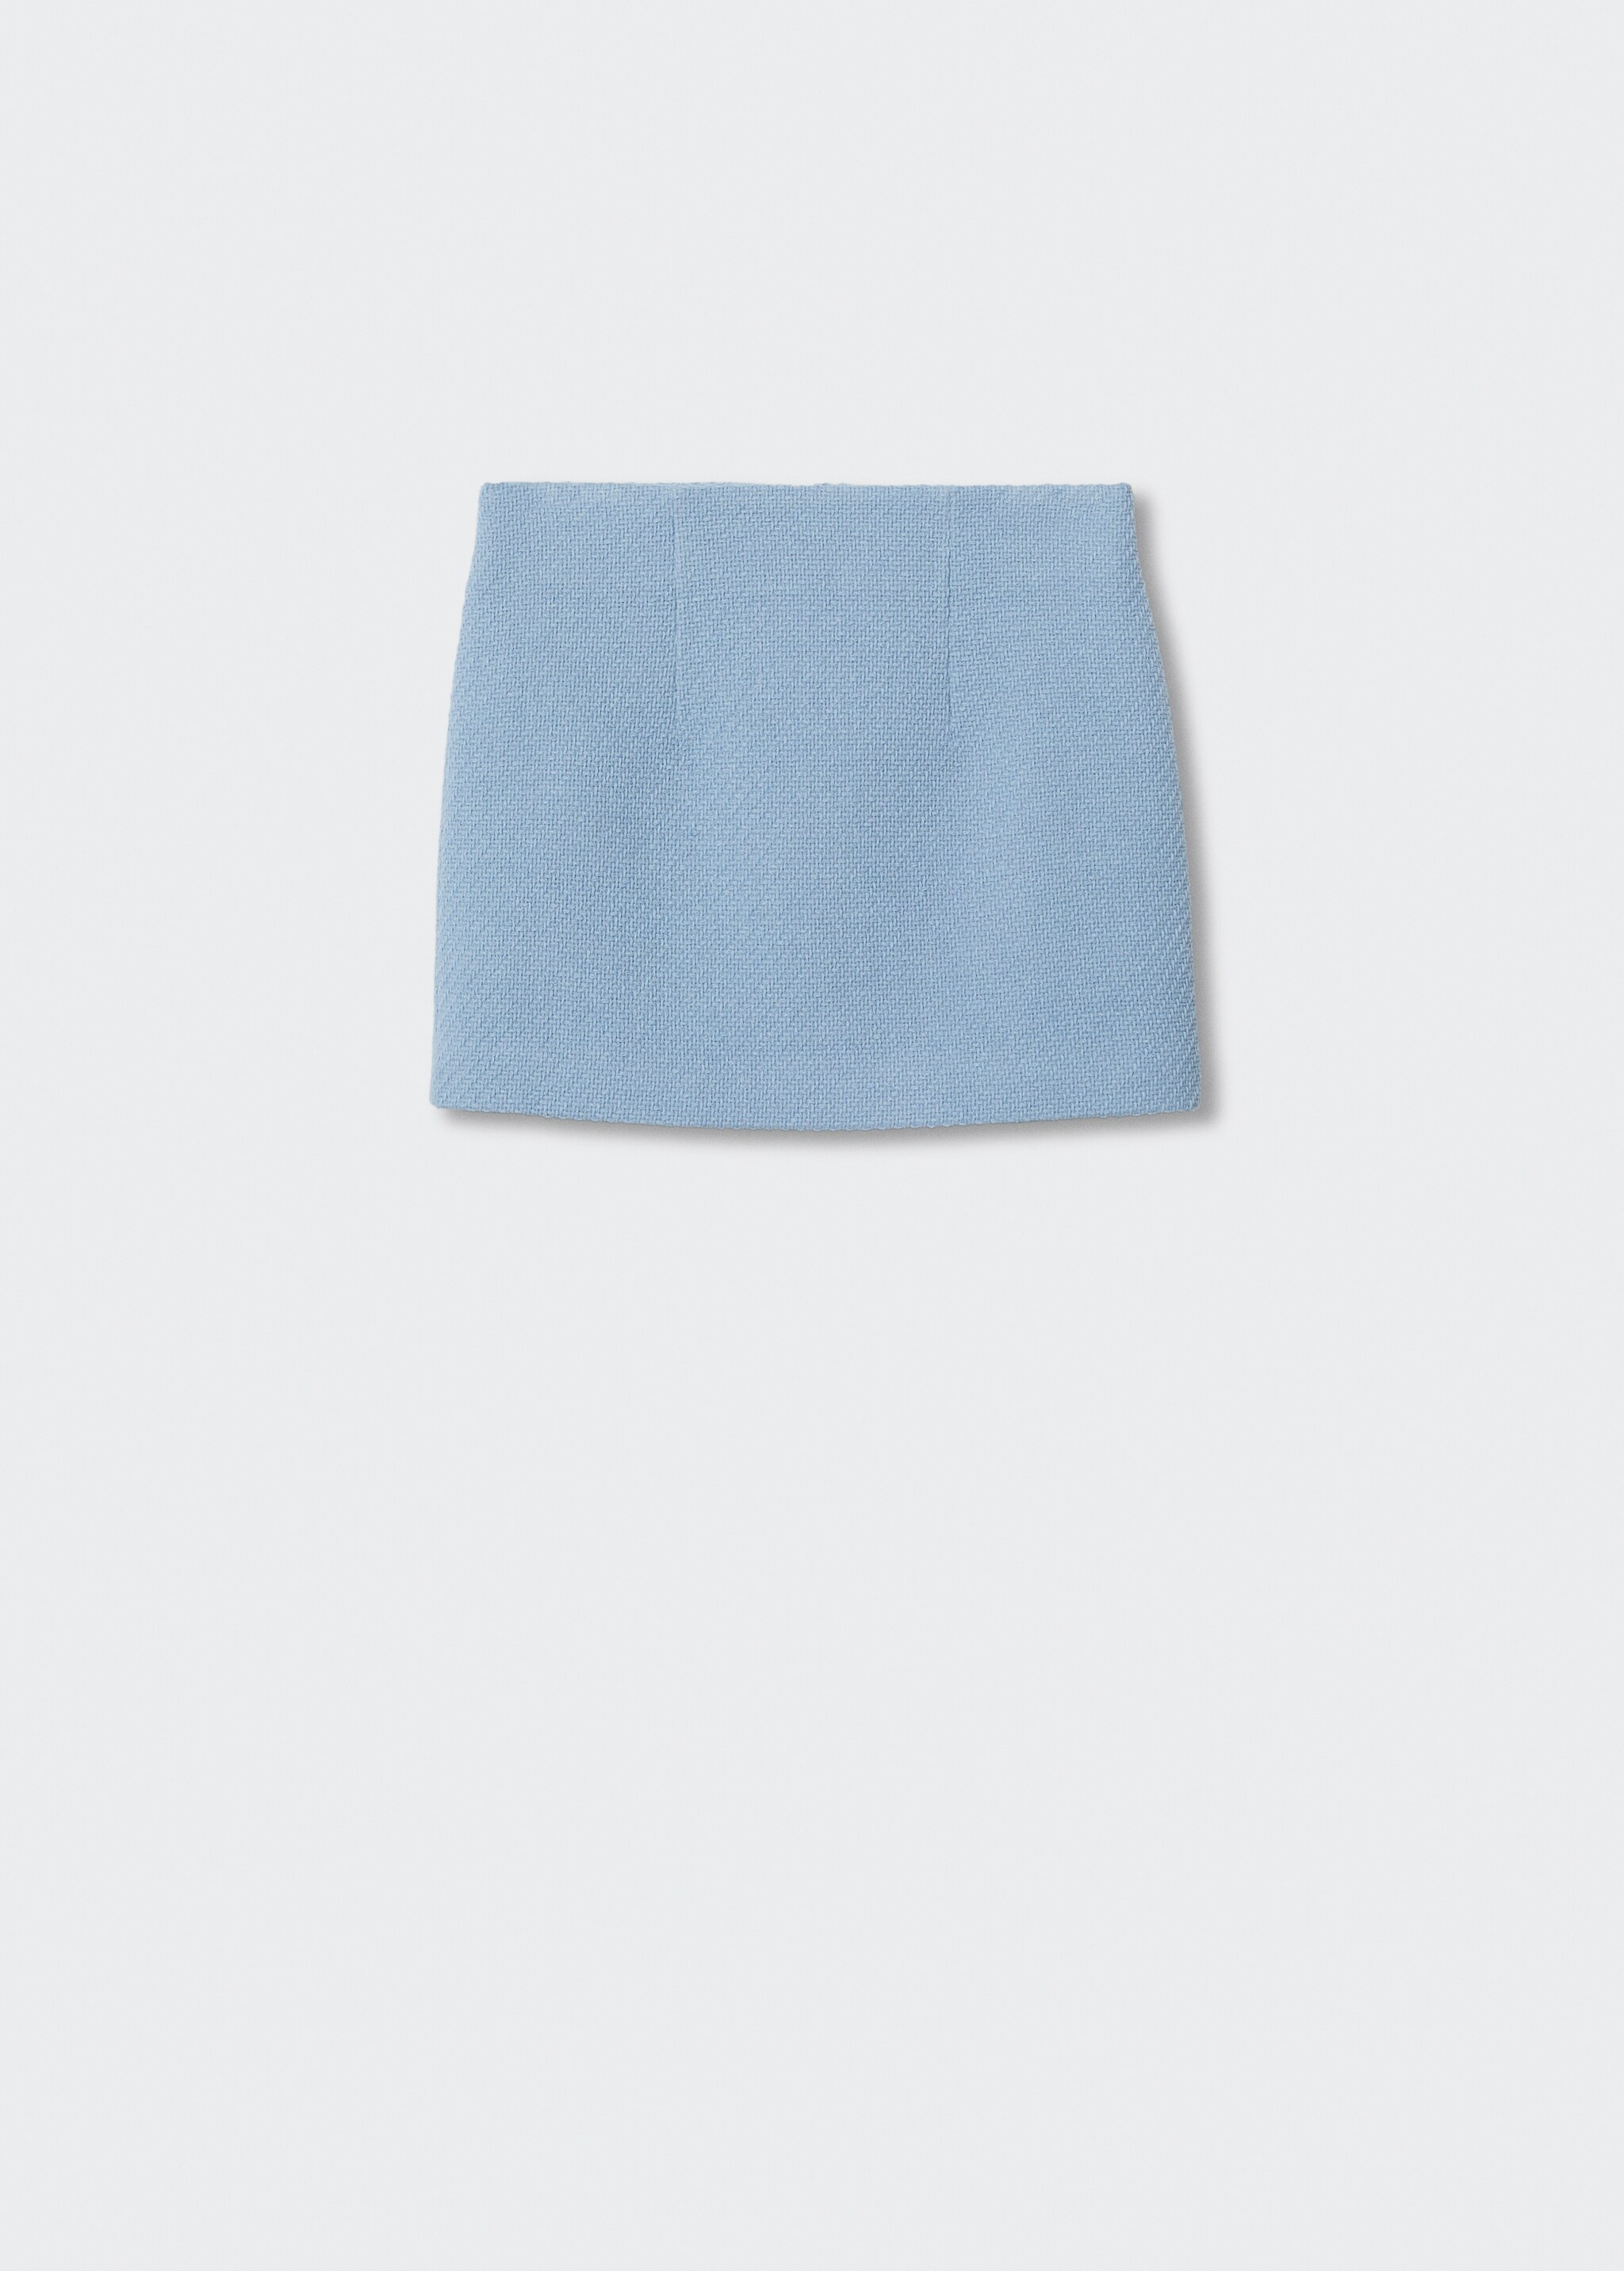 Minifalda traje tweed - Artículo sin modelo